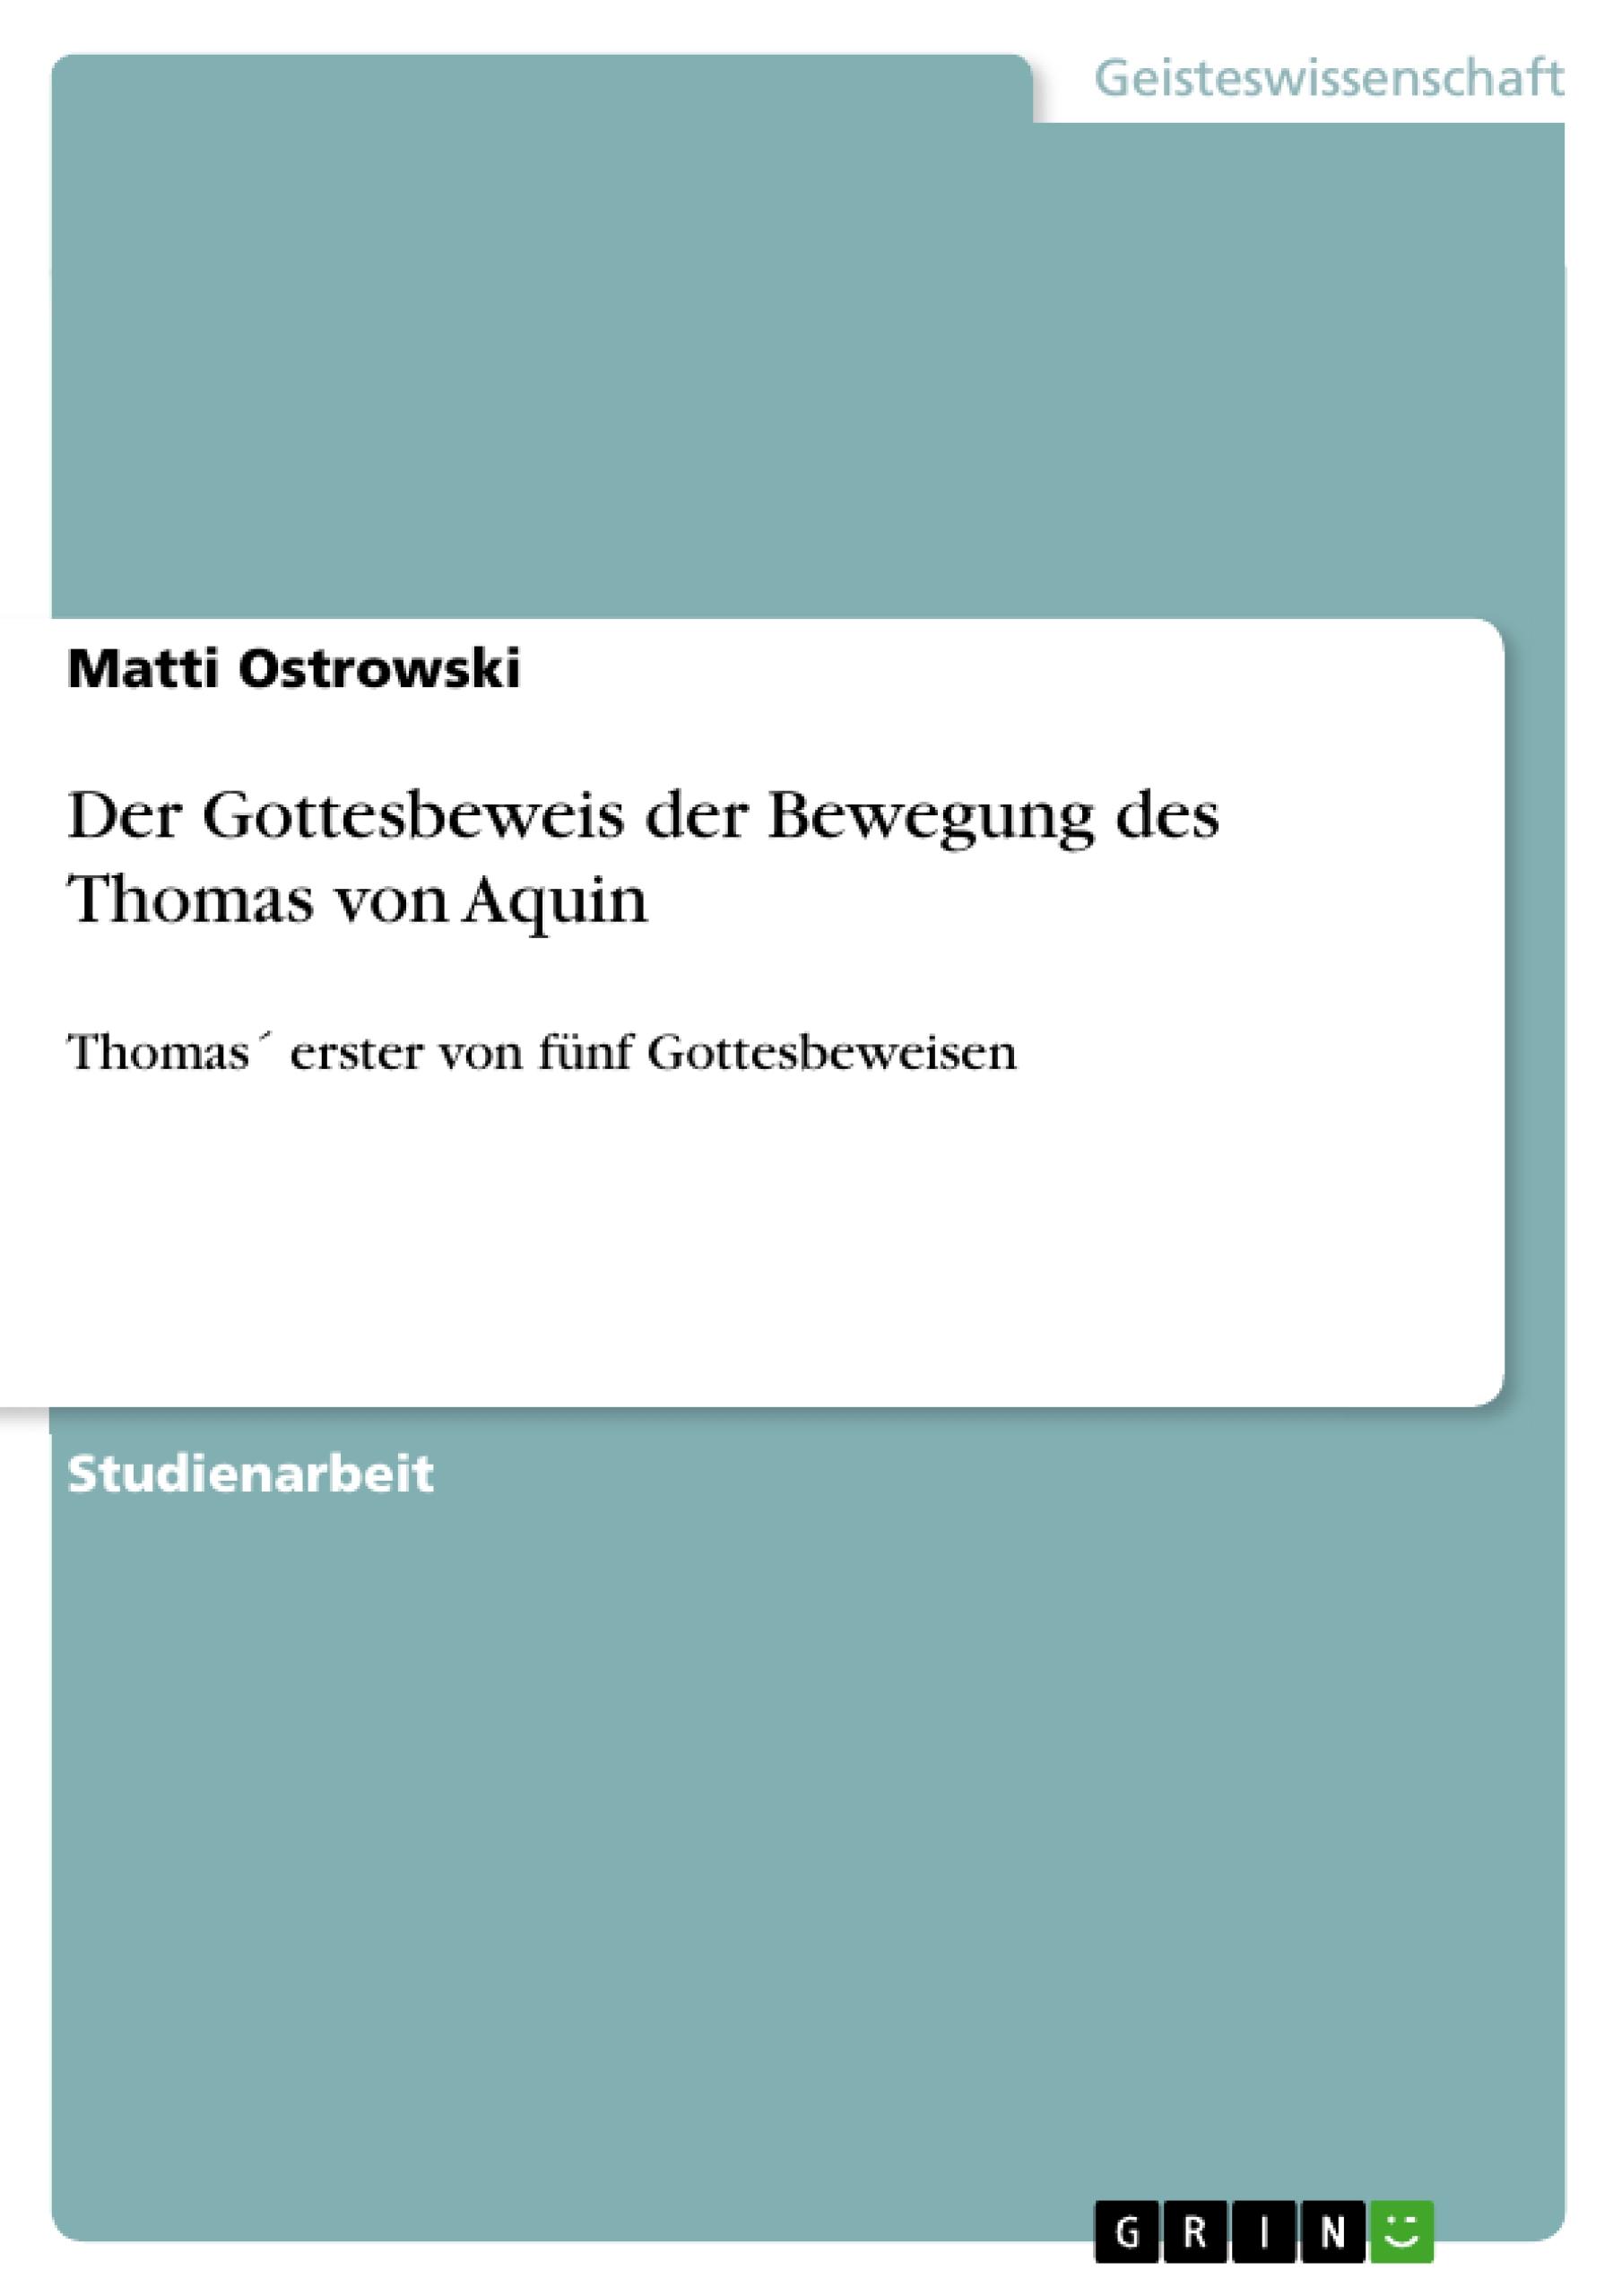 Der Gottesbeweis der Bewegung des Thomas von Aquin - Ostrowski, Matti